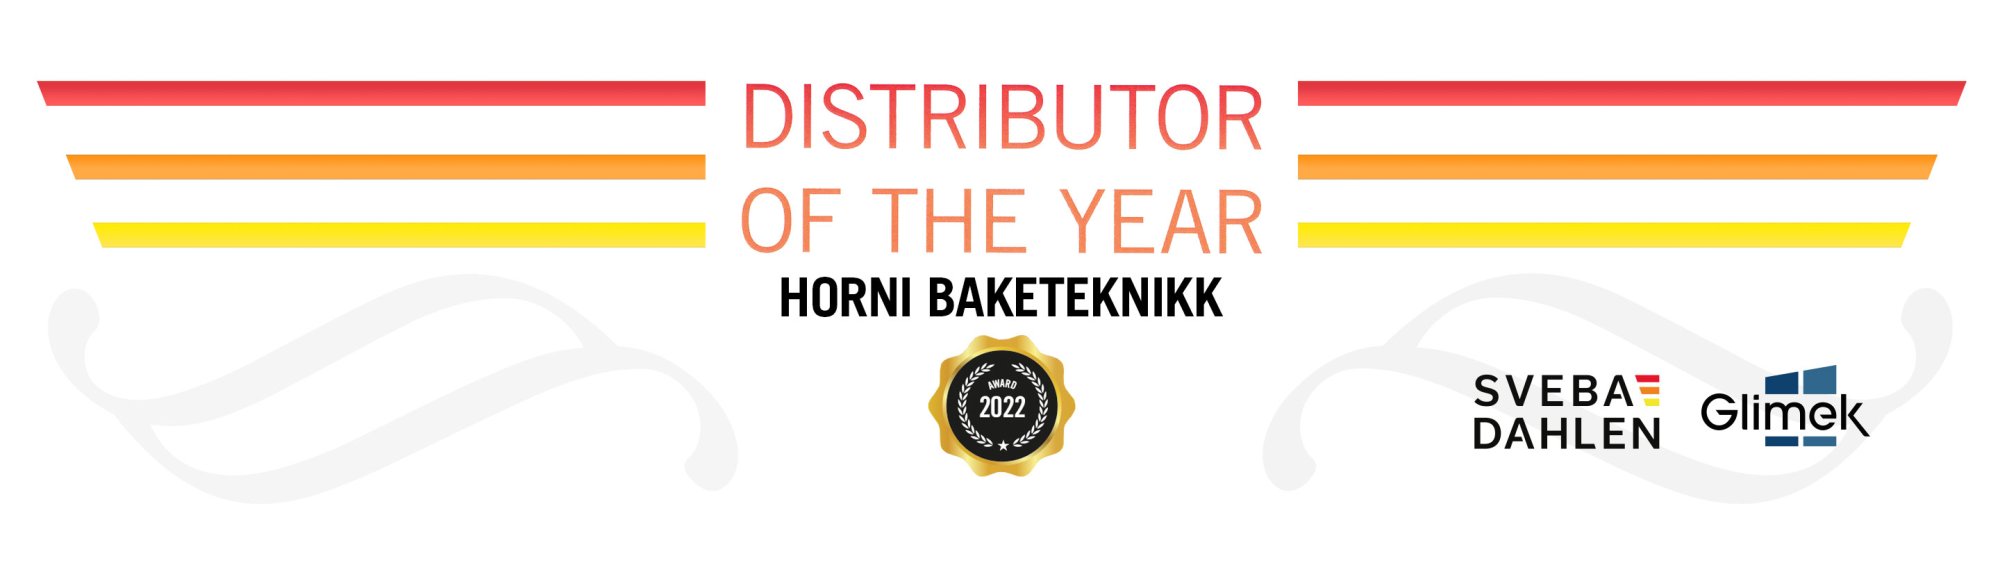 Distributor of the year 2022 Horni Baketeiknikk distributor Norway Sveba Dahlen Glimek Ovens baking equipment